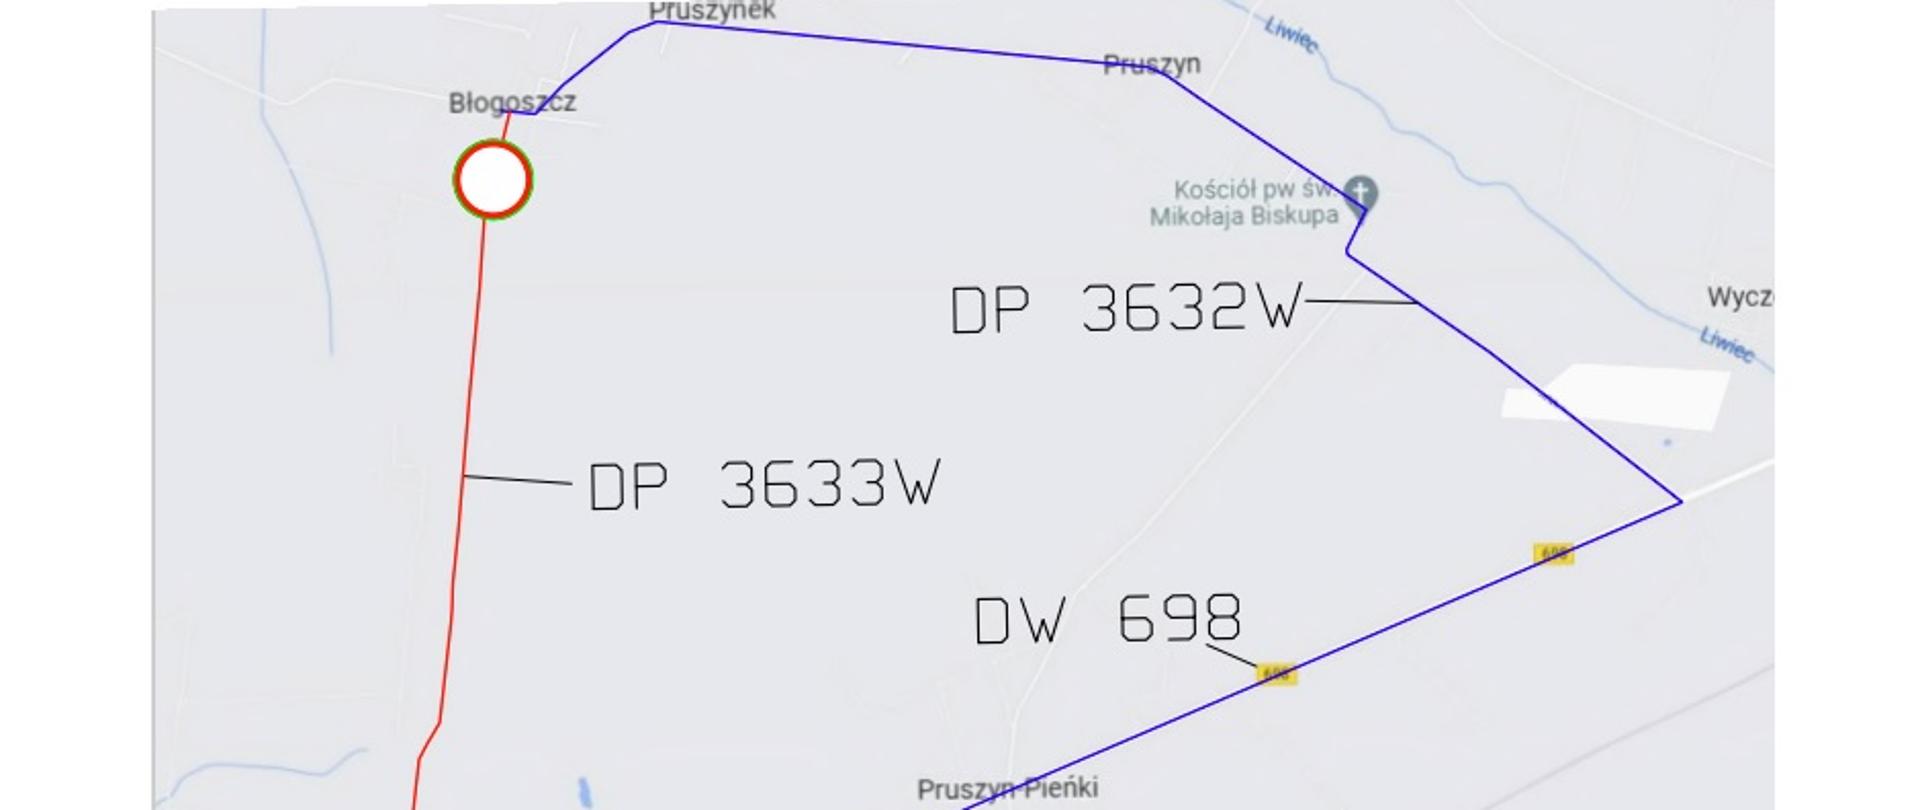 Grafika przedstawia mapę z zaznaczonym objazdem przez miejscowości: Pruszynek, Pruszyn i Pruszyn-Pieńki